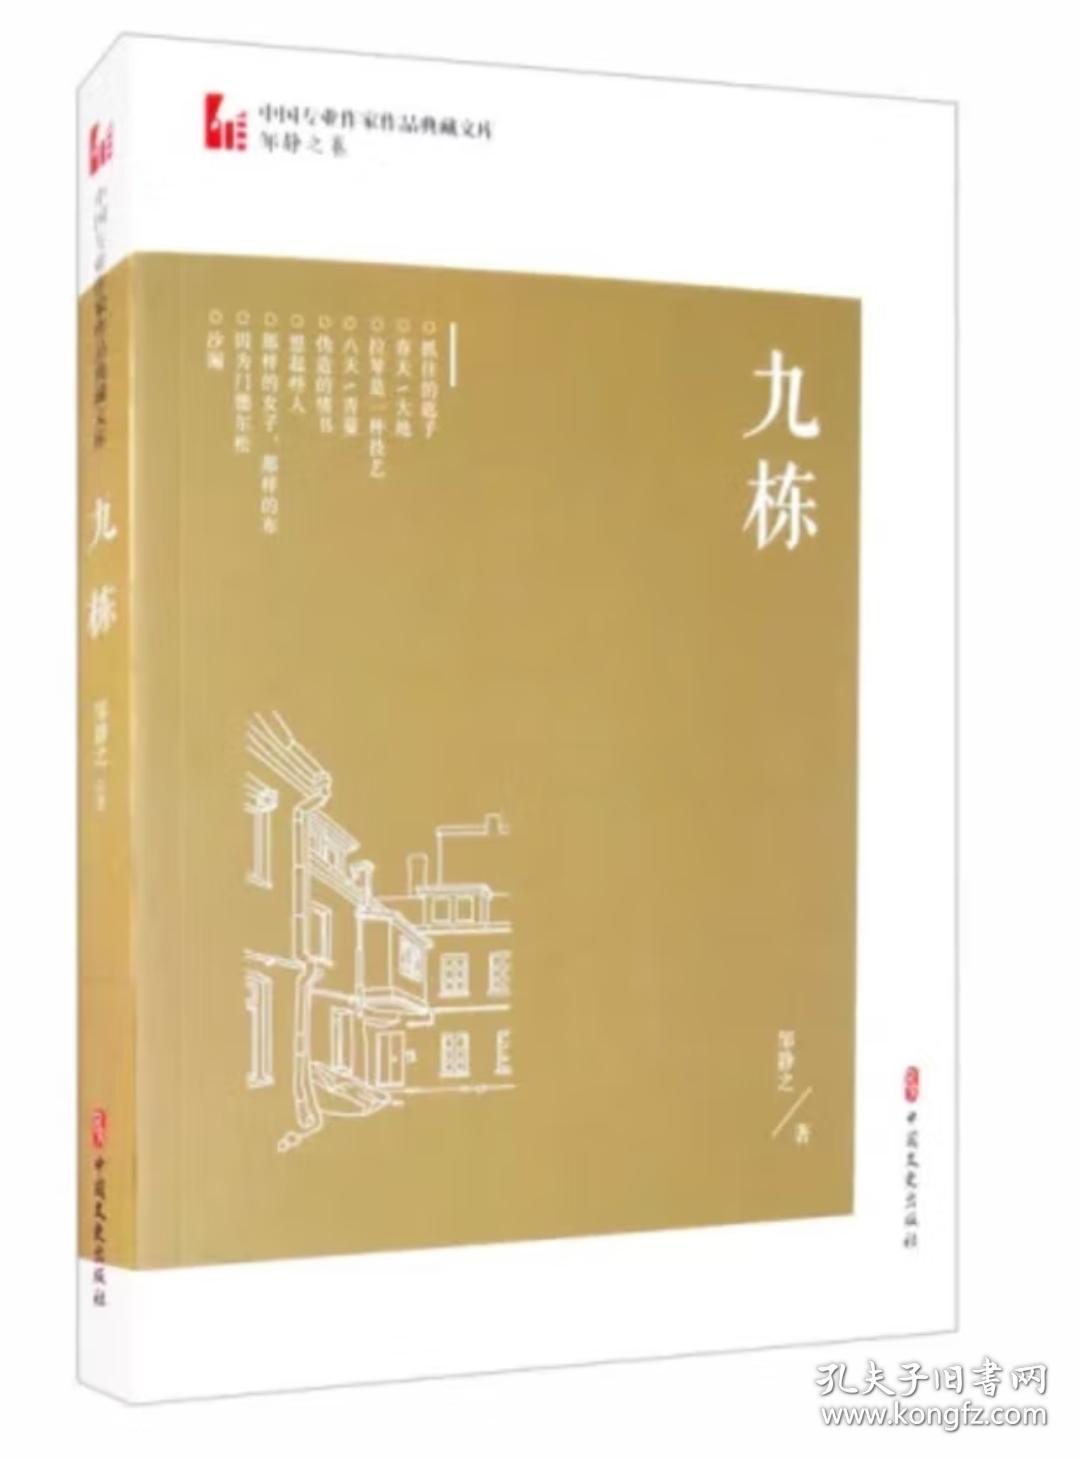 九栋/中国专业作家作品典藏文库·邹静之卷